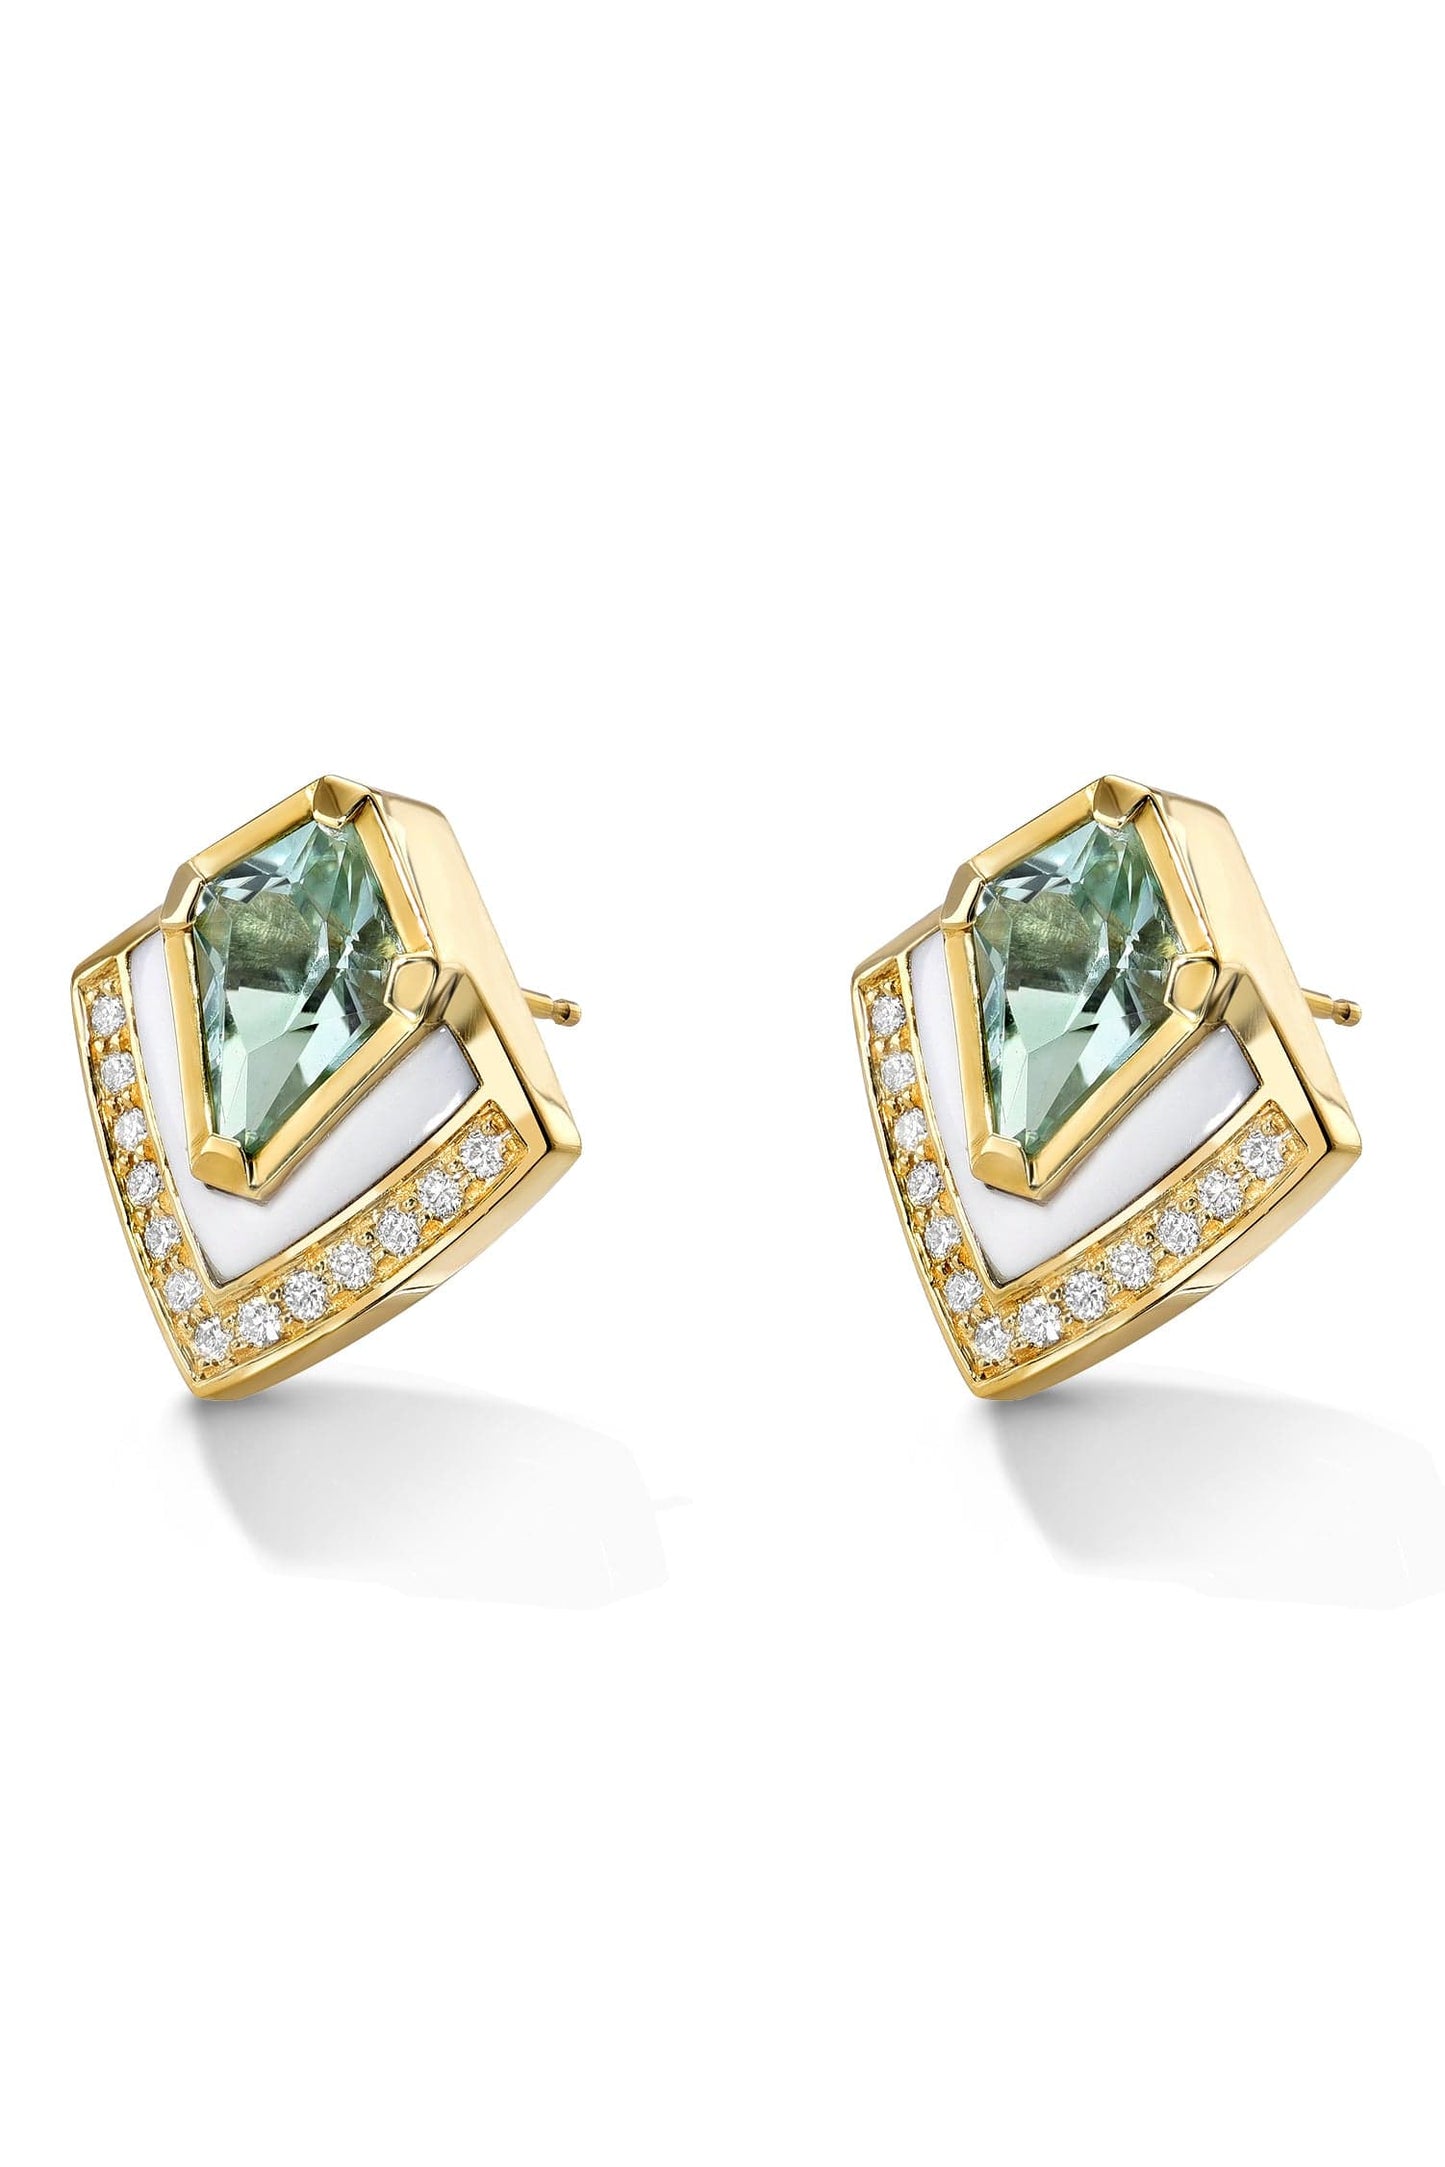 ANDY LIF-Green Tourmaline Shield Earrings-YELLOW GOLD